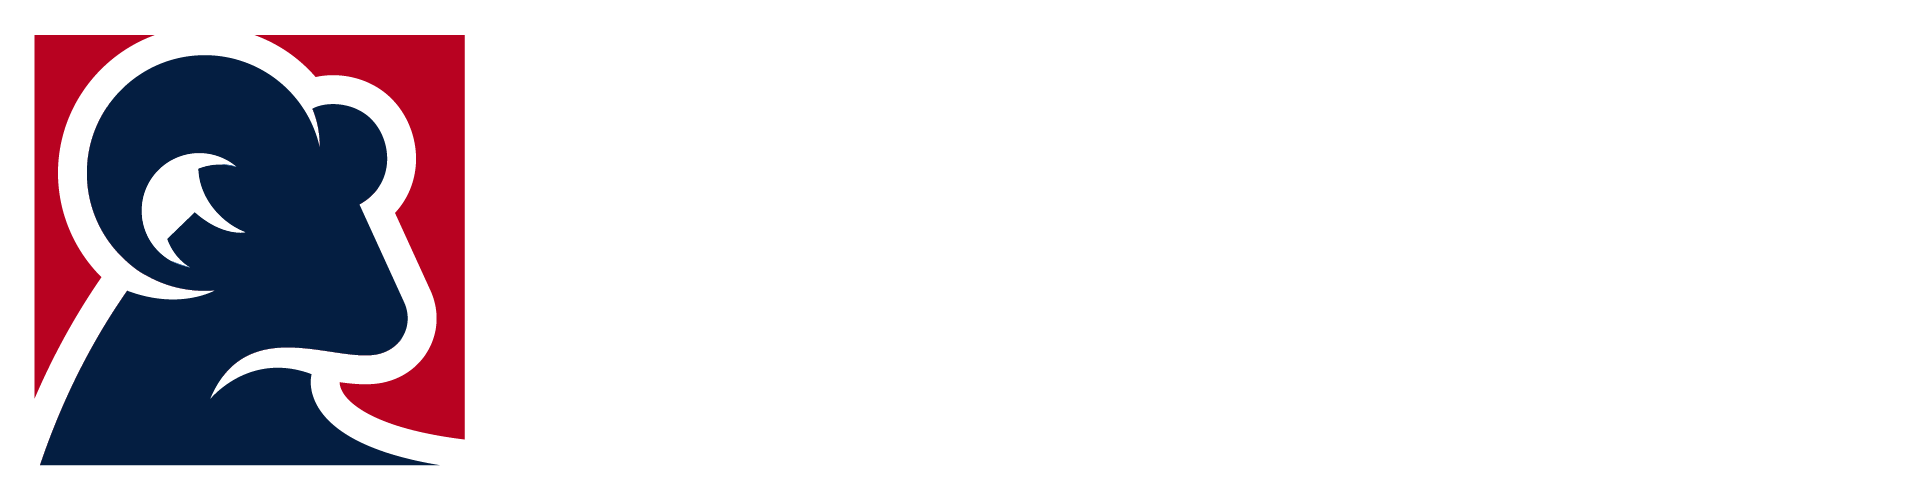 goat-directive-logo-light